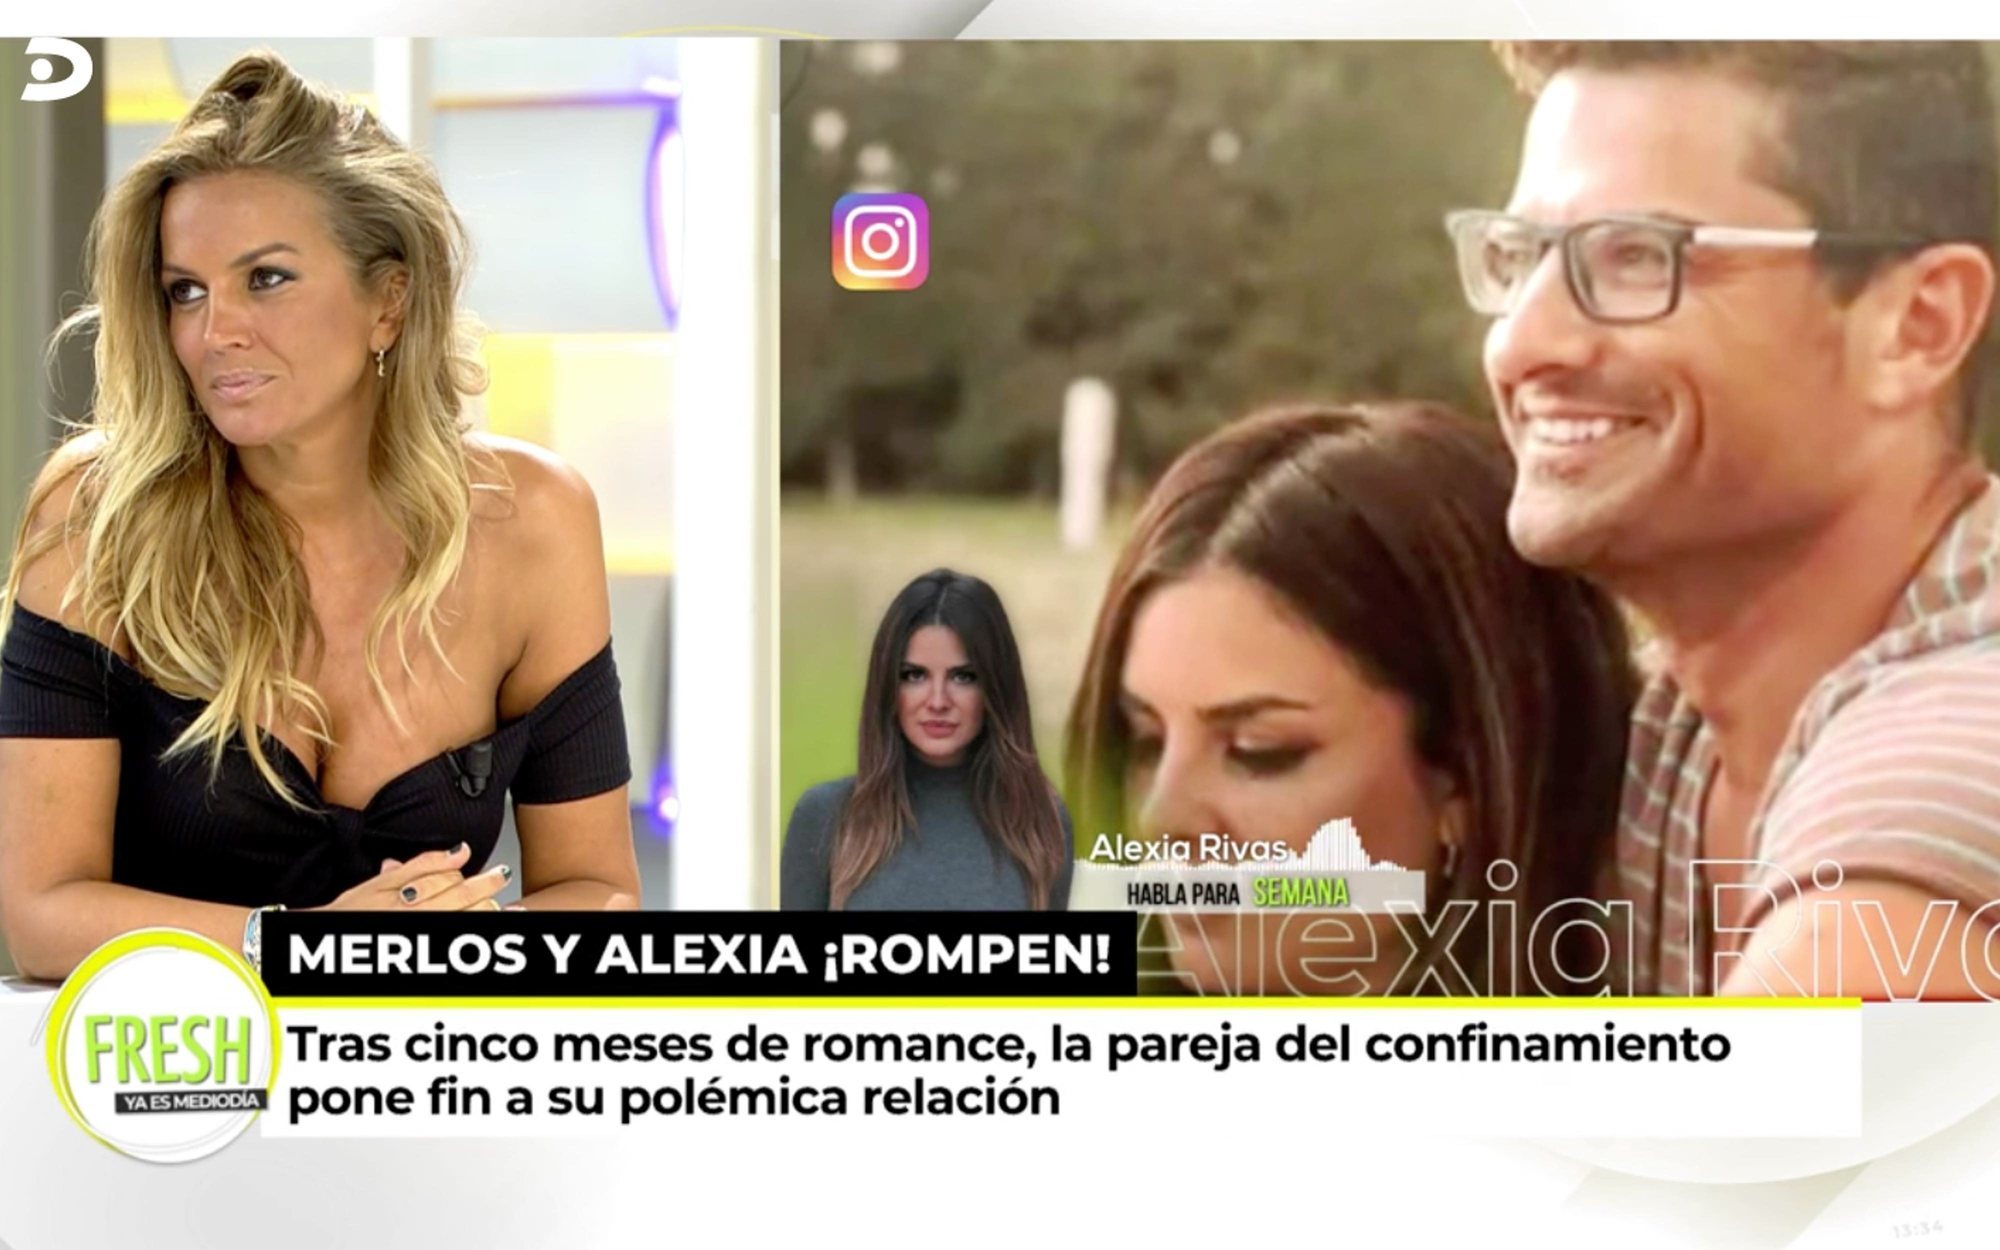 La reacción de Marta López a la ruptura de Alfonso Merlos y Alexia Rivas: "Me consta que él piensa en mí"